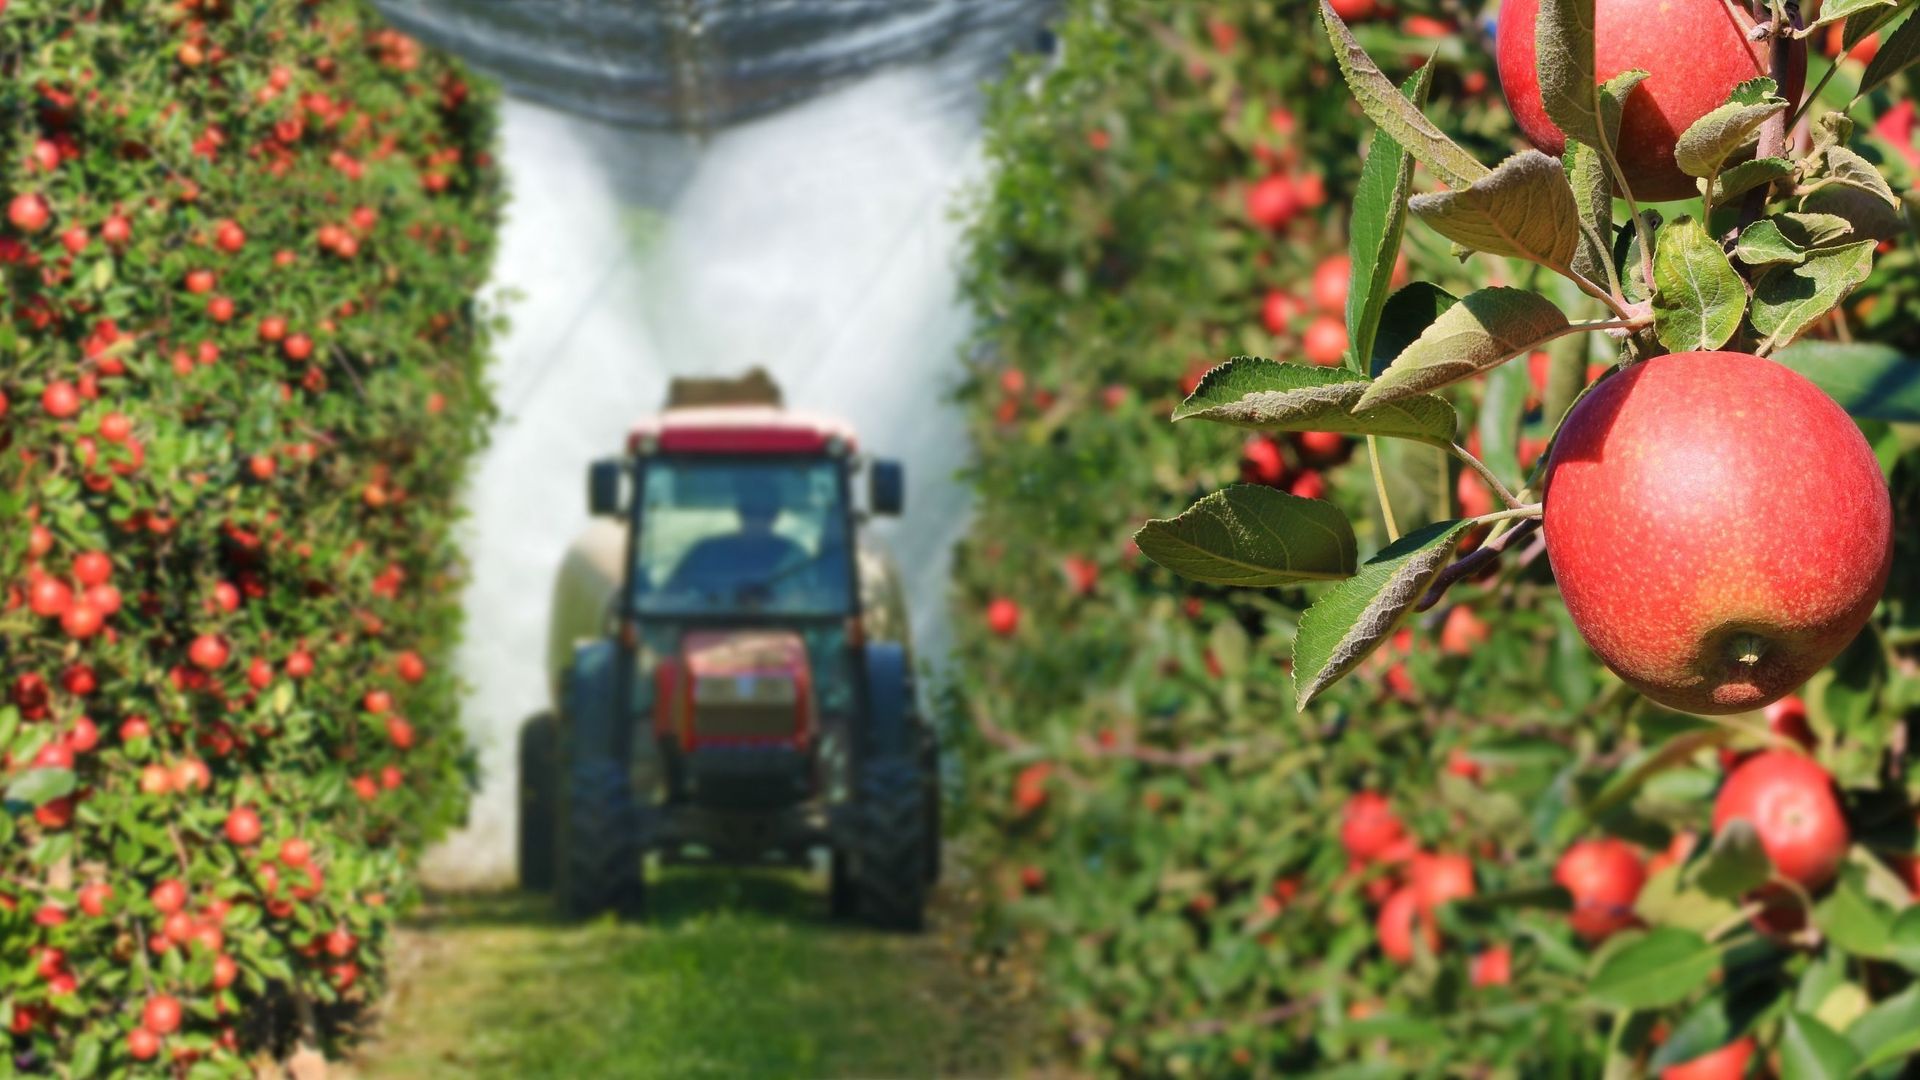 Un campione su tre di frutta contaminata da pesticidi in Belgio?  Afska oliato